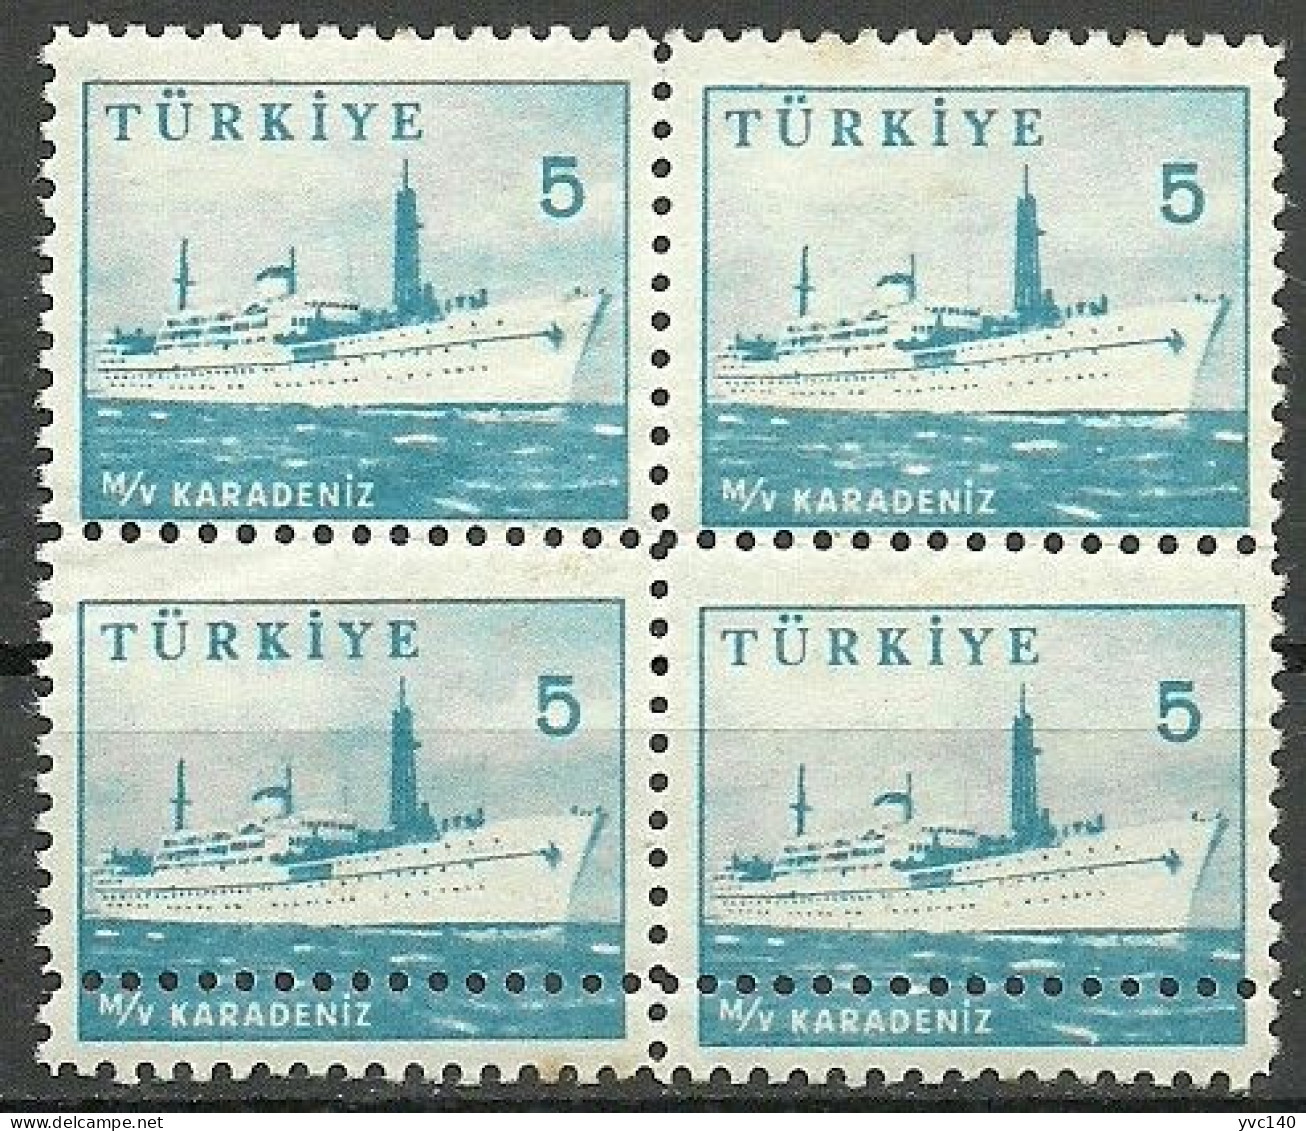 Turkey; 1959 Pictorial Postage Stamp 5 K. ERROR "Doouuble Perf." - Ongebruikt